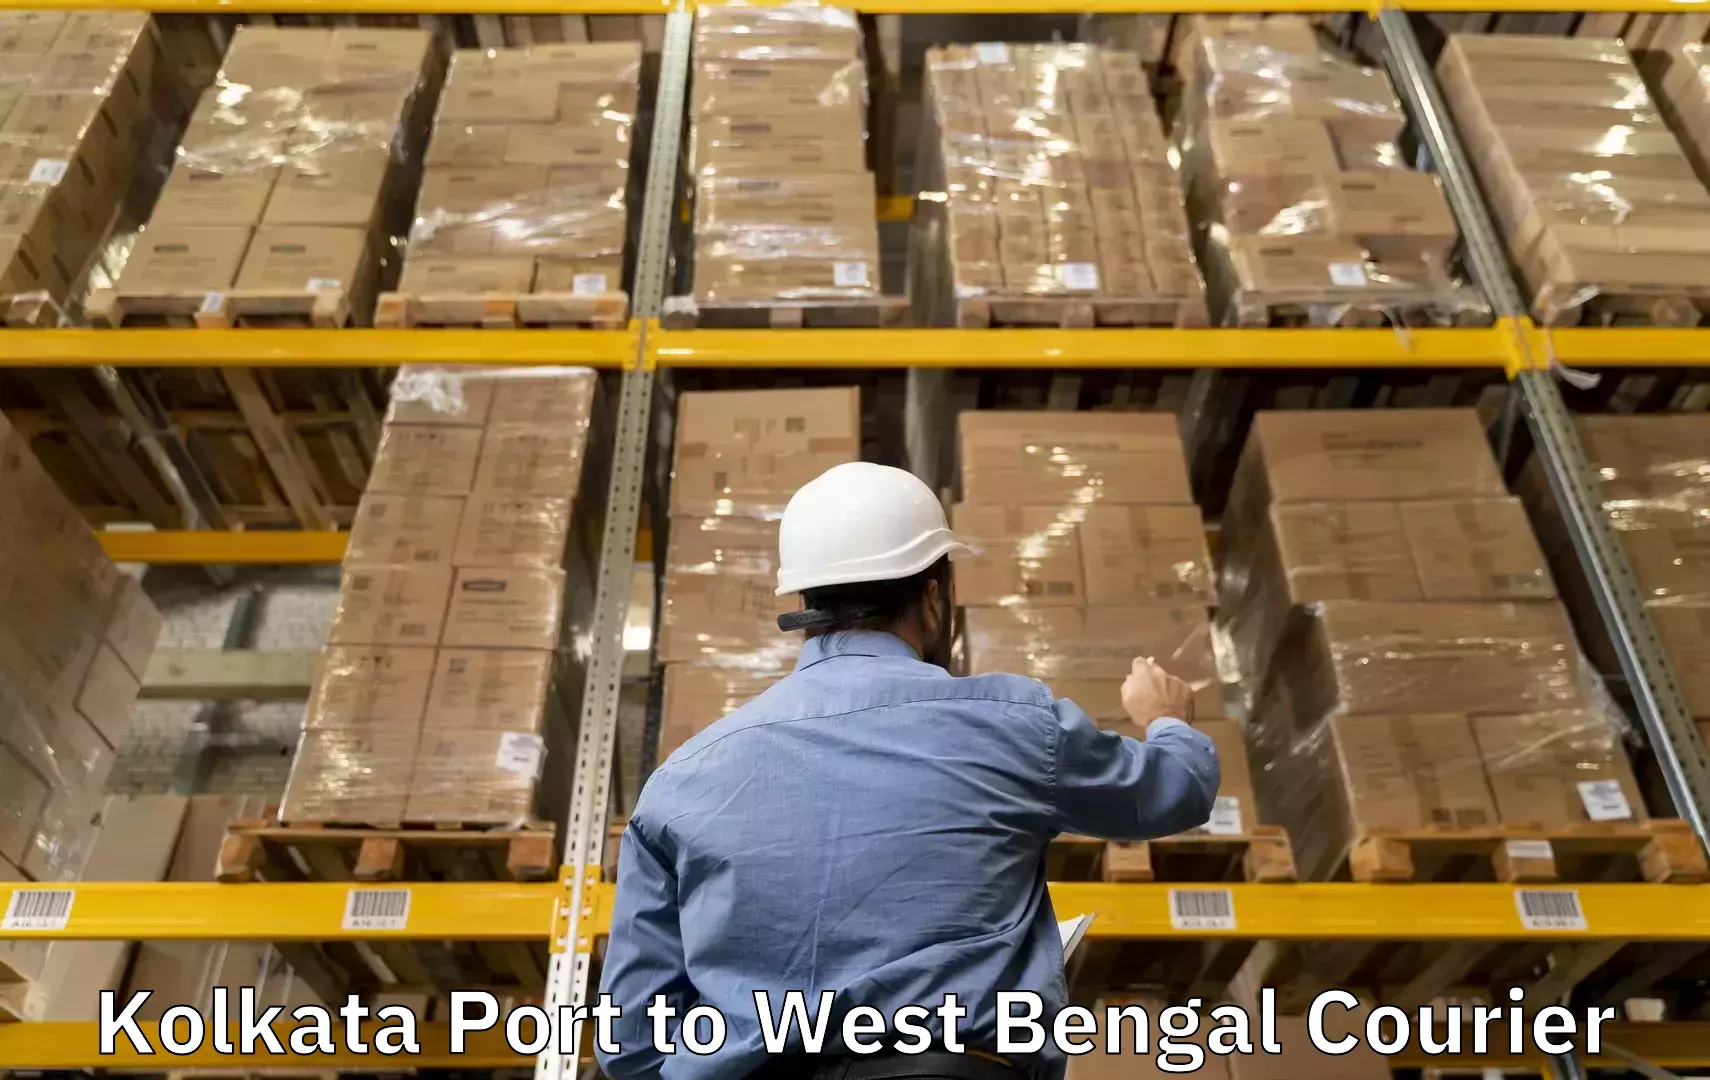 Luggage transit service Kolkata Port to Pundibari